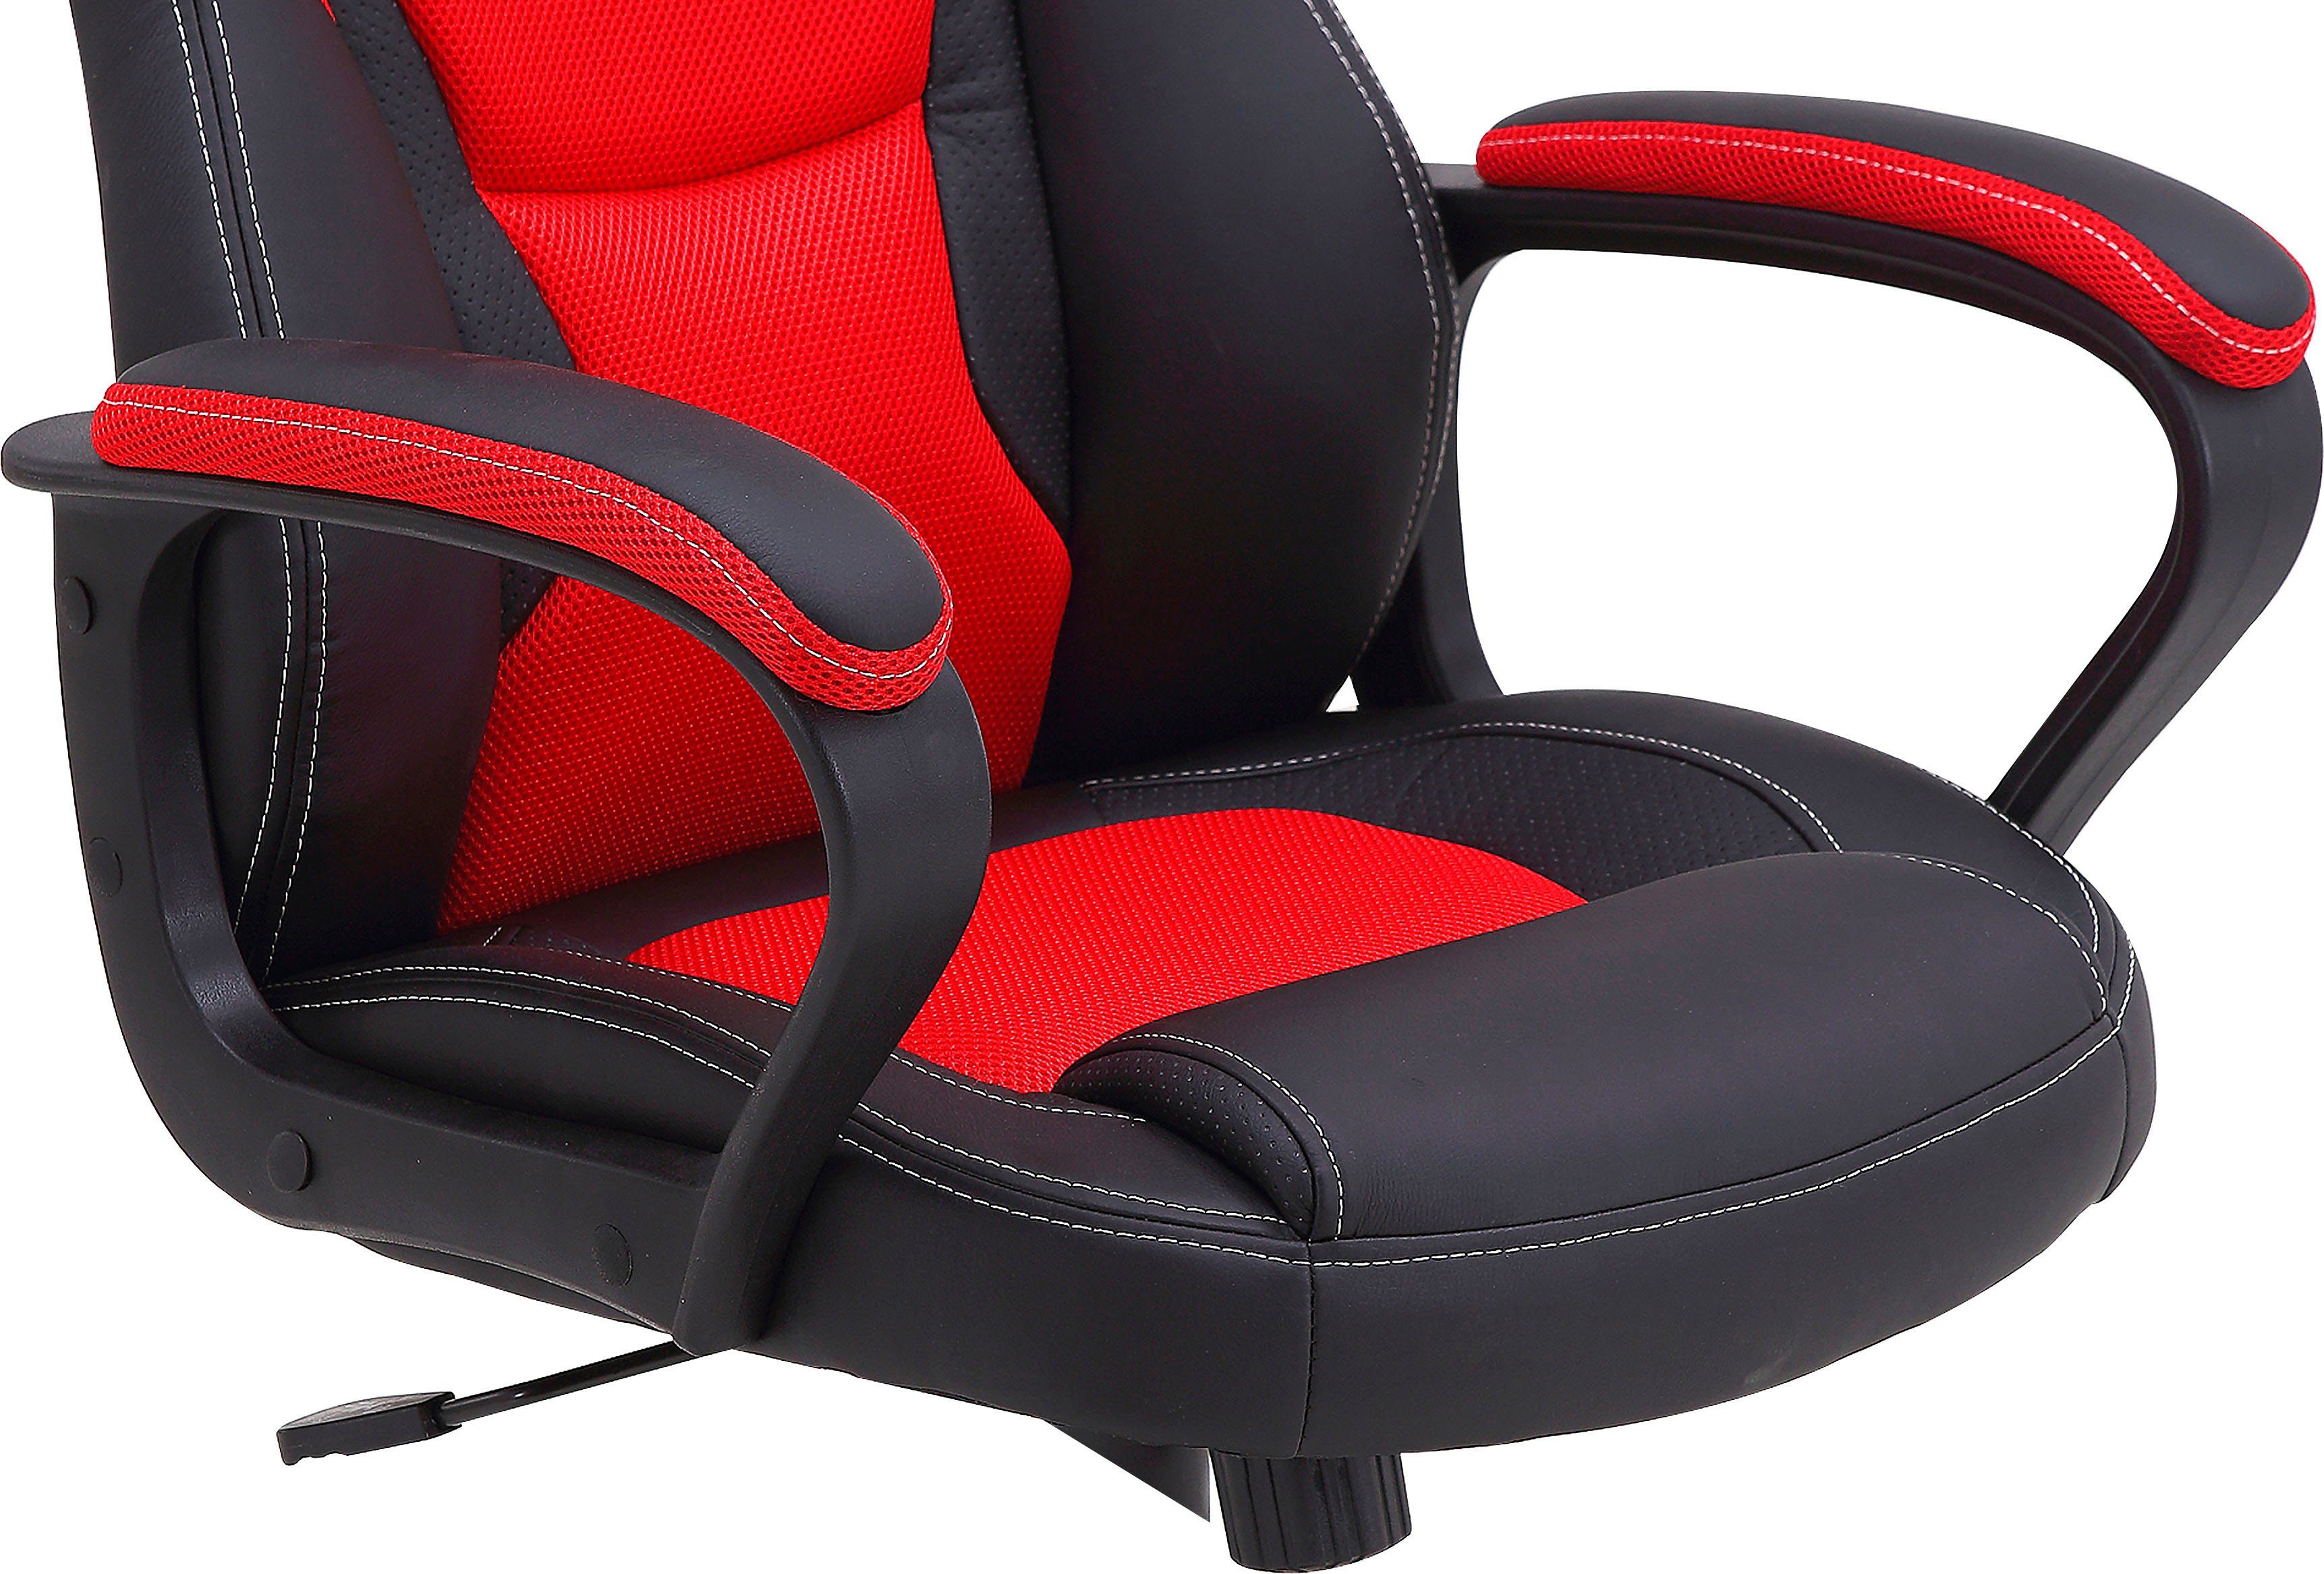 mit byLIVING rot Gaming-Stuhl verstellbarer | Matteo, schwarz rot Wippmechanik / schwarz / Schreibtischstuhl